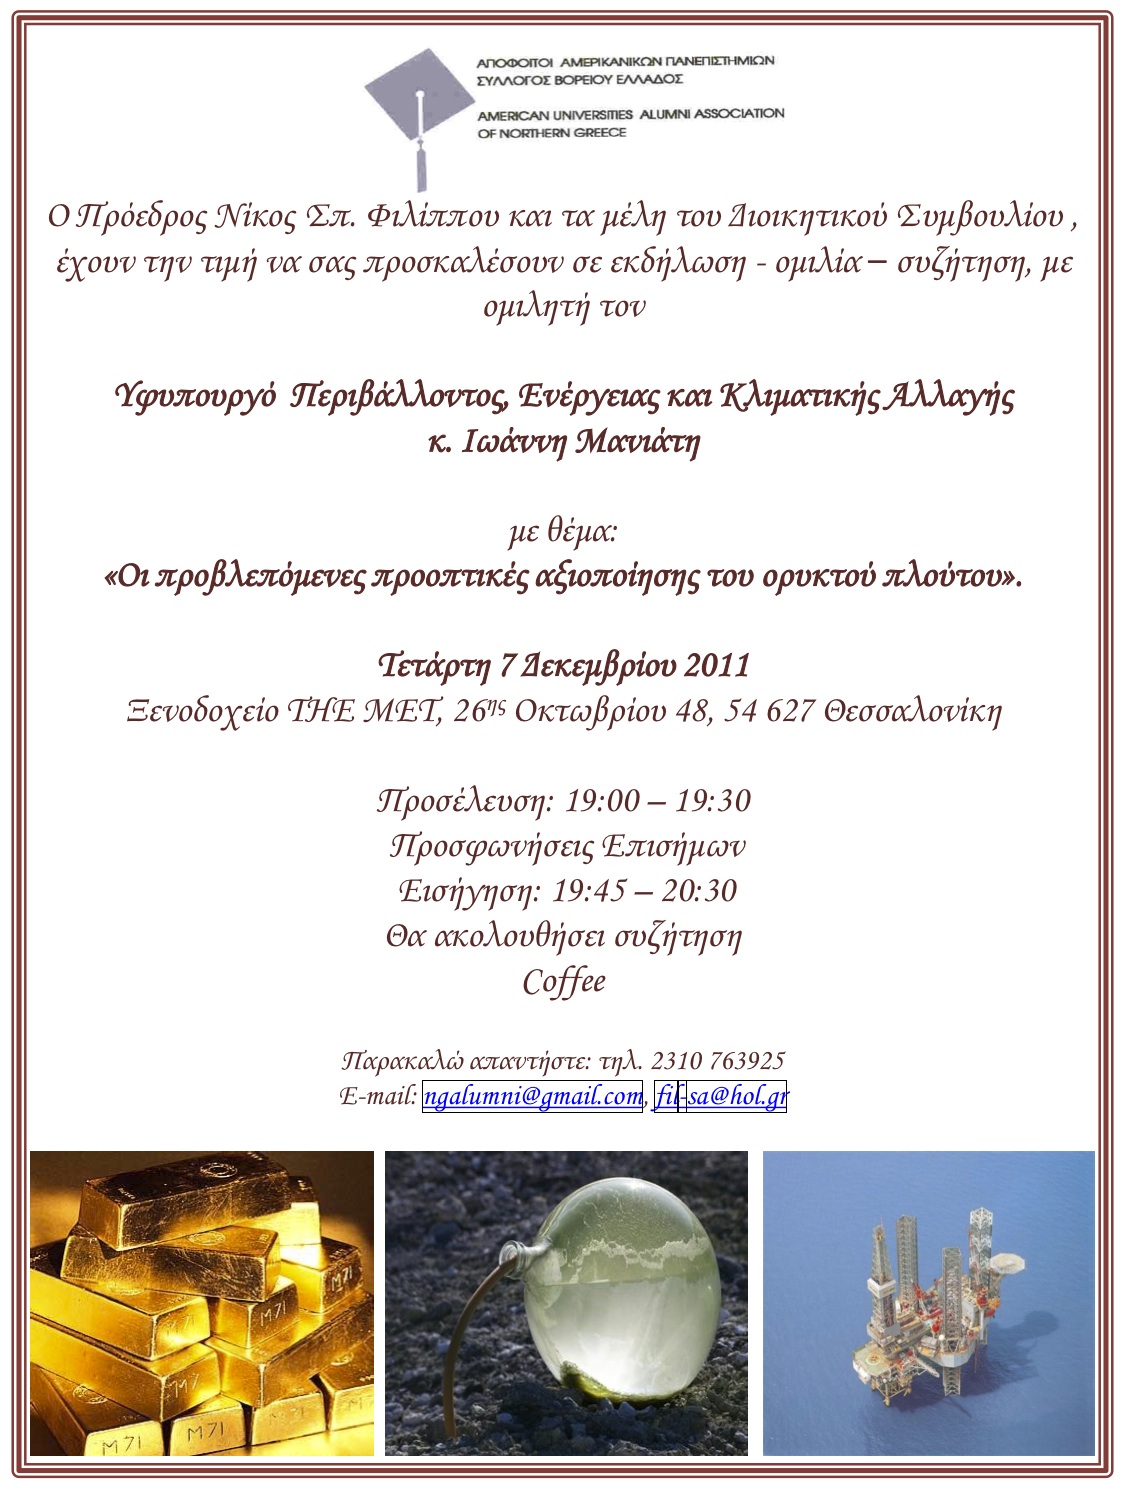 Ομιλία Μανιάτη για την “αξιοποίηση” του ορυκτού πλούτου στη Θεσσαλονίκη